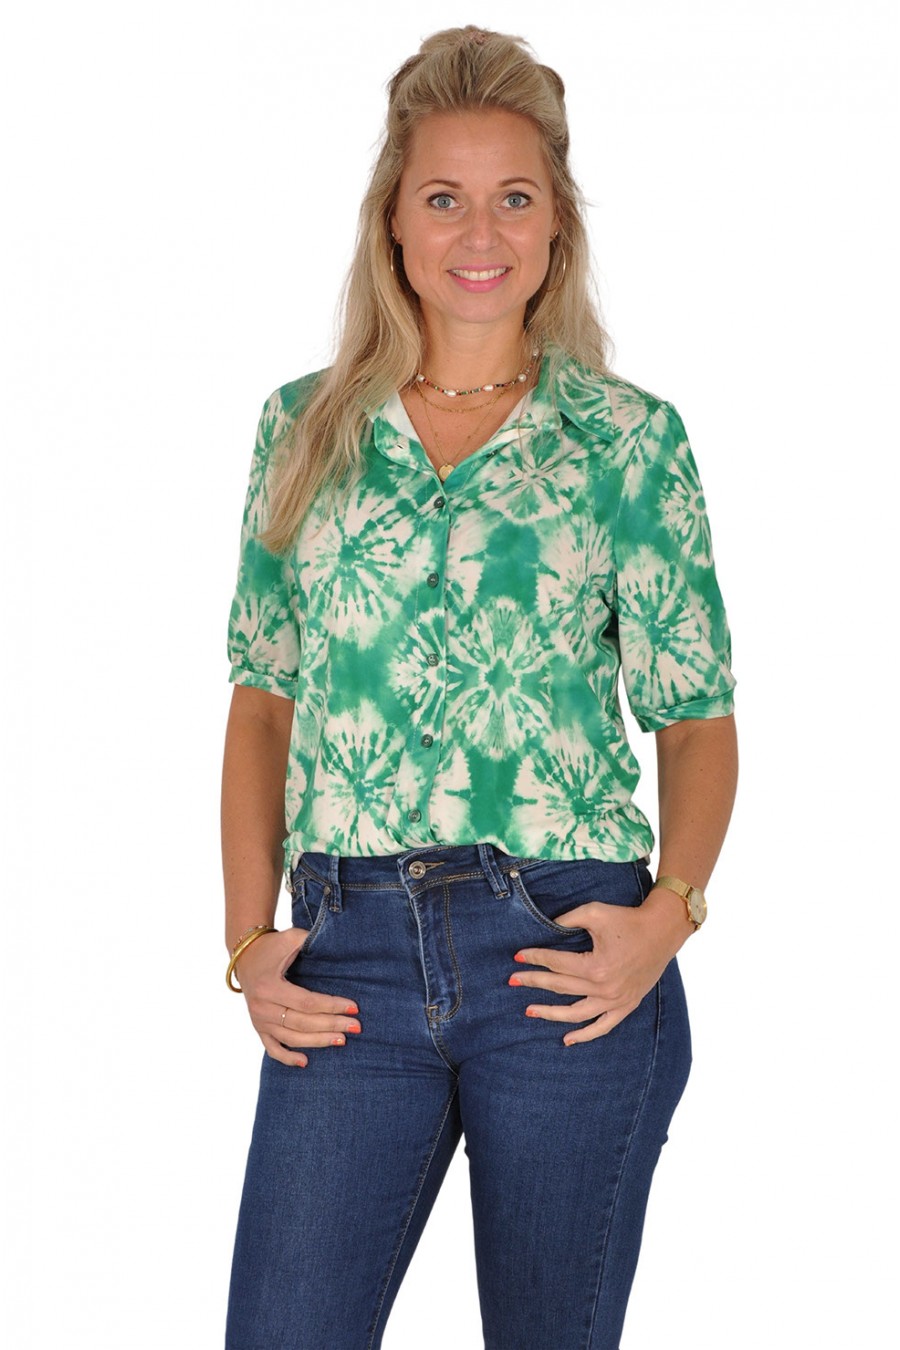 Ultrasoft blouse Tie dye groen New Collection